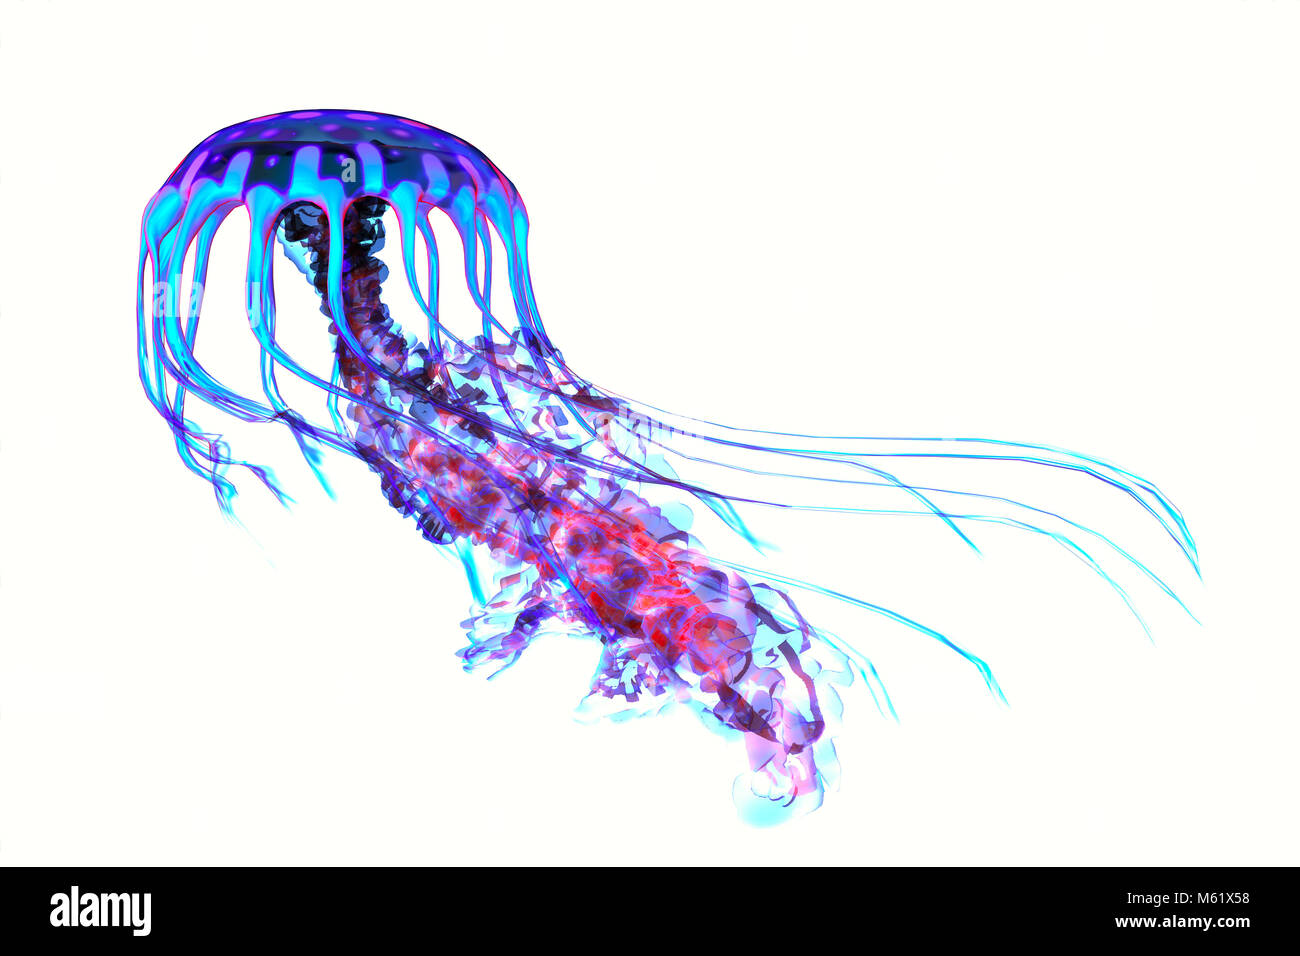 L'oceano medusa cerca per pesci preda e utilizza i suoi tentacoli velenosi per sottomettere gli animali si caccia. Foto Stock